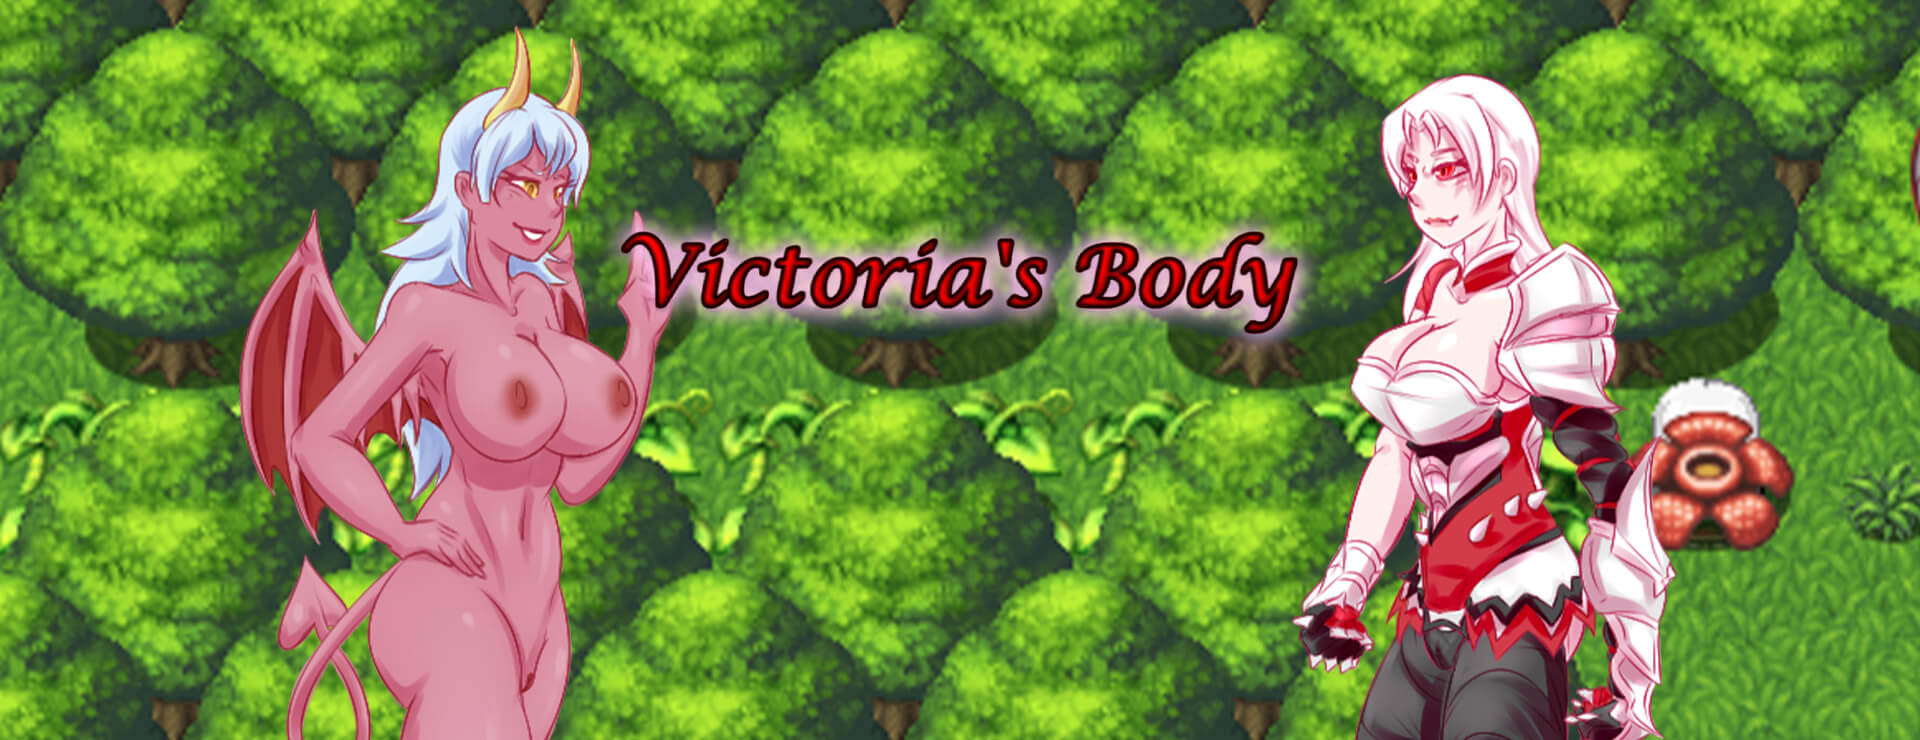 Victoria's Body - RPG Gra